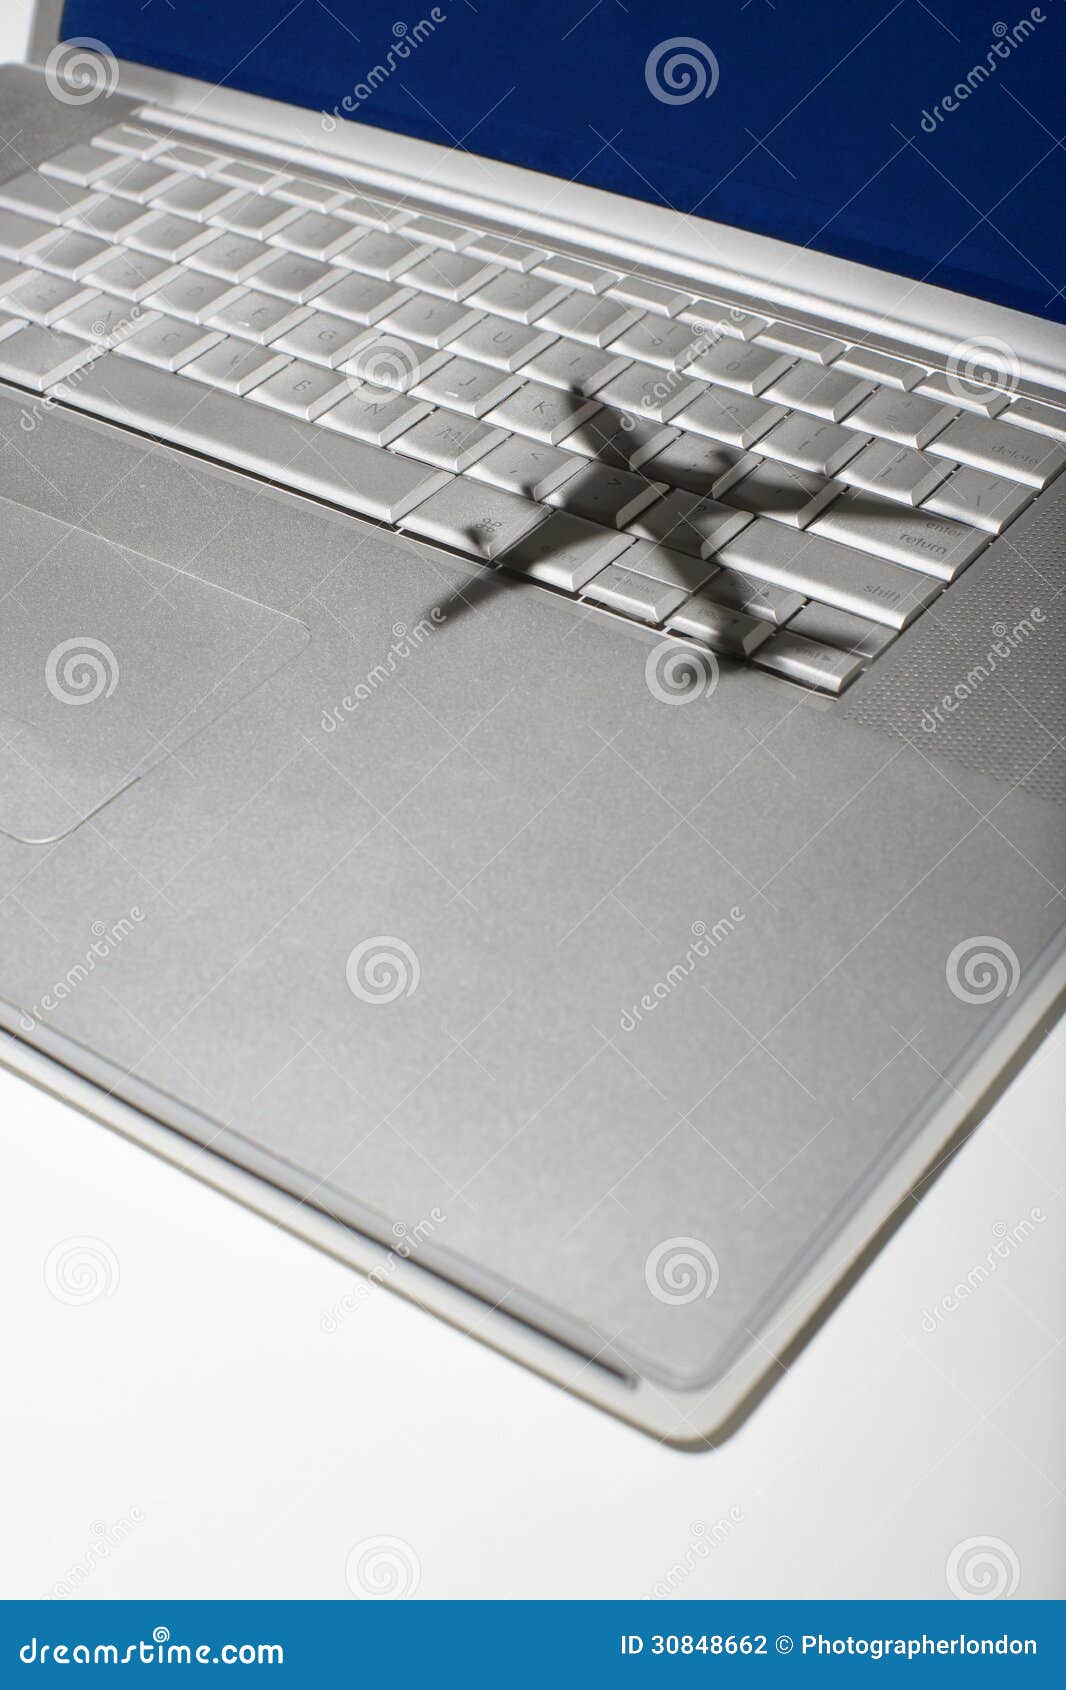 shadow of jumbo jet over apple macintosh keyboard